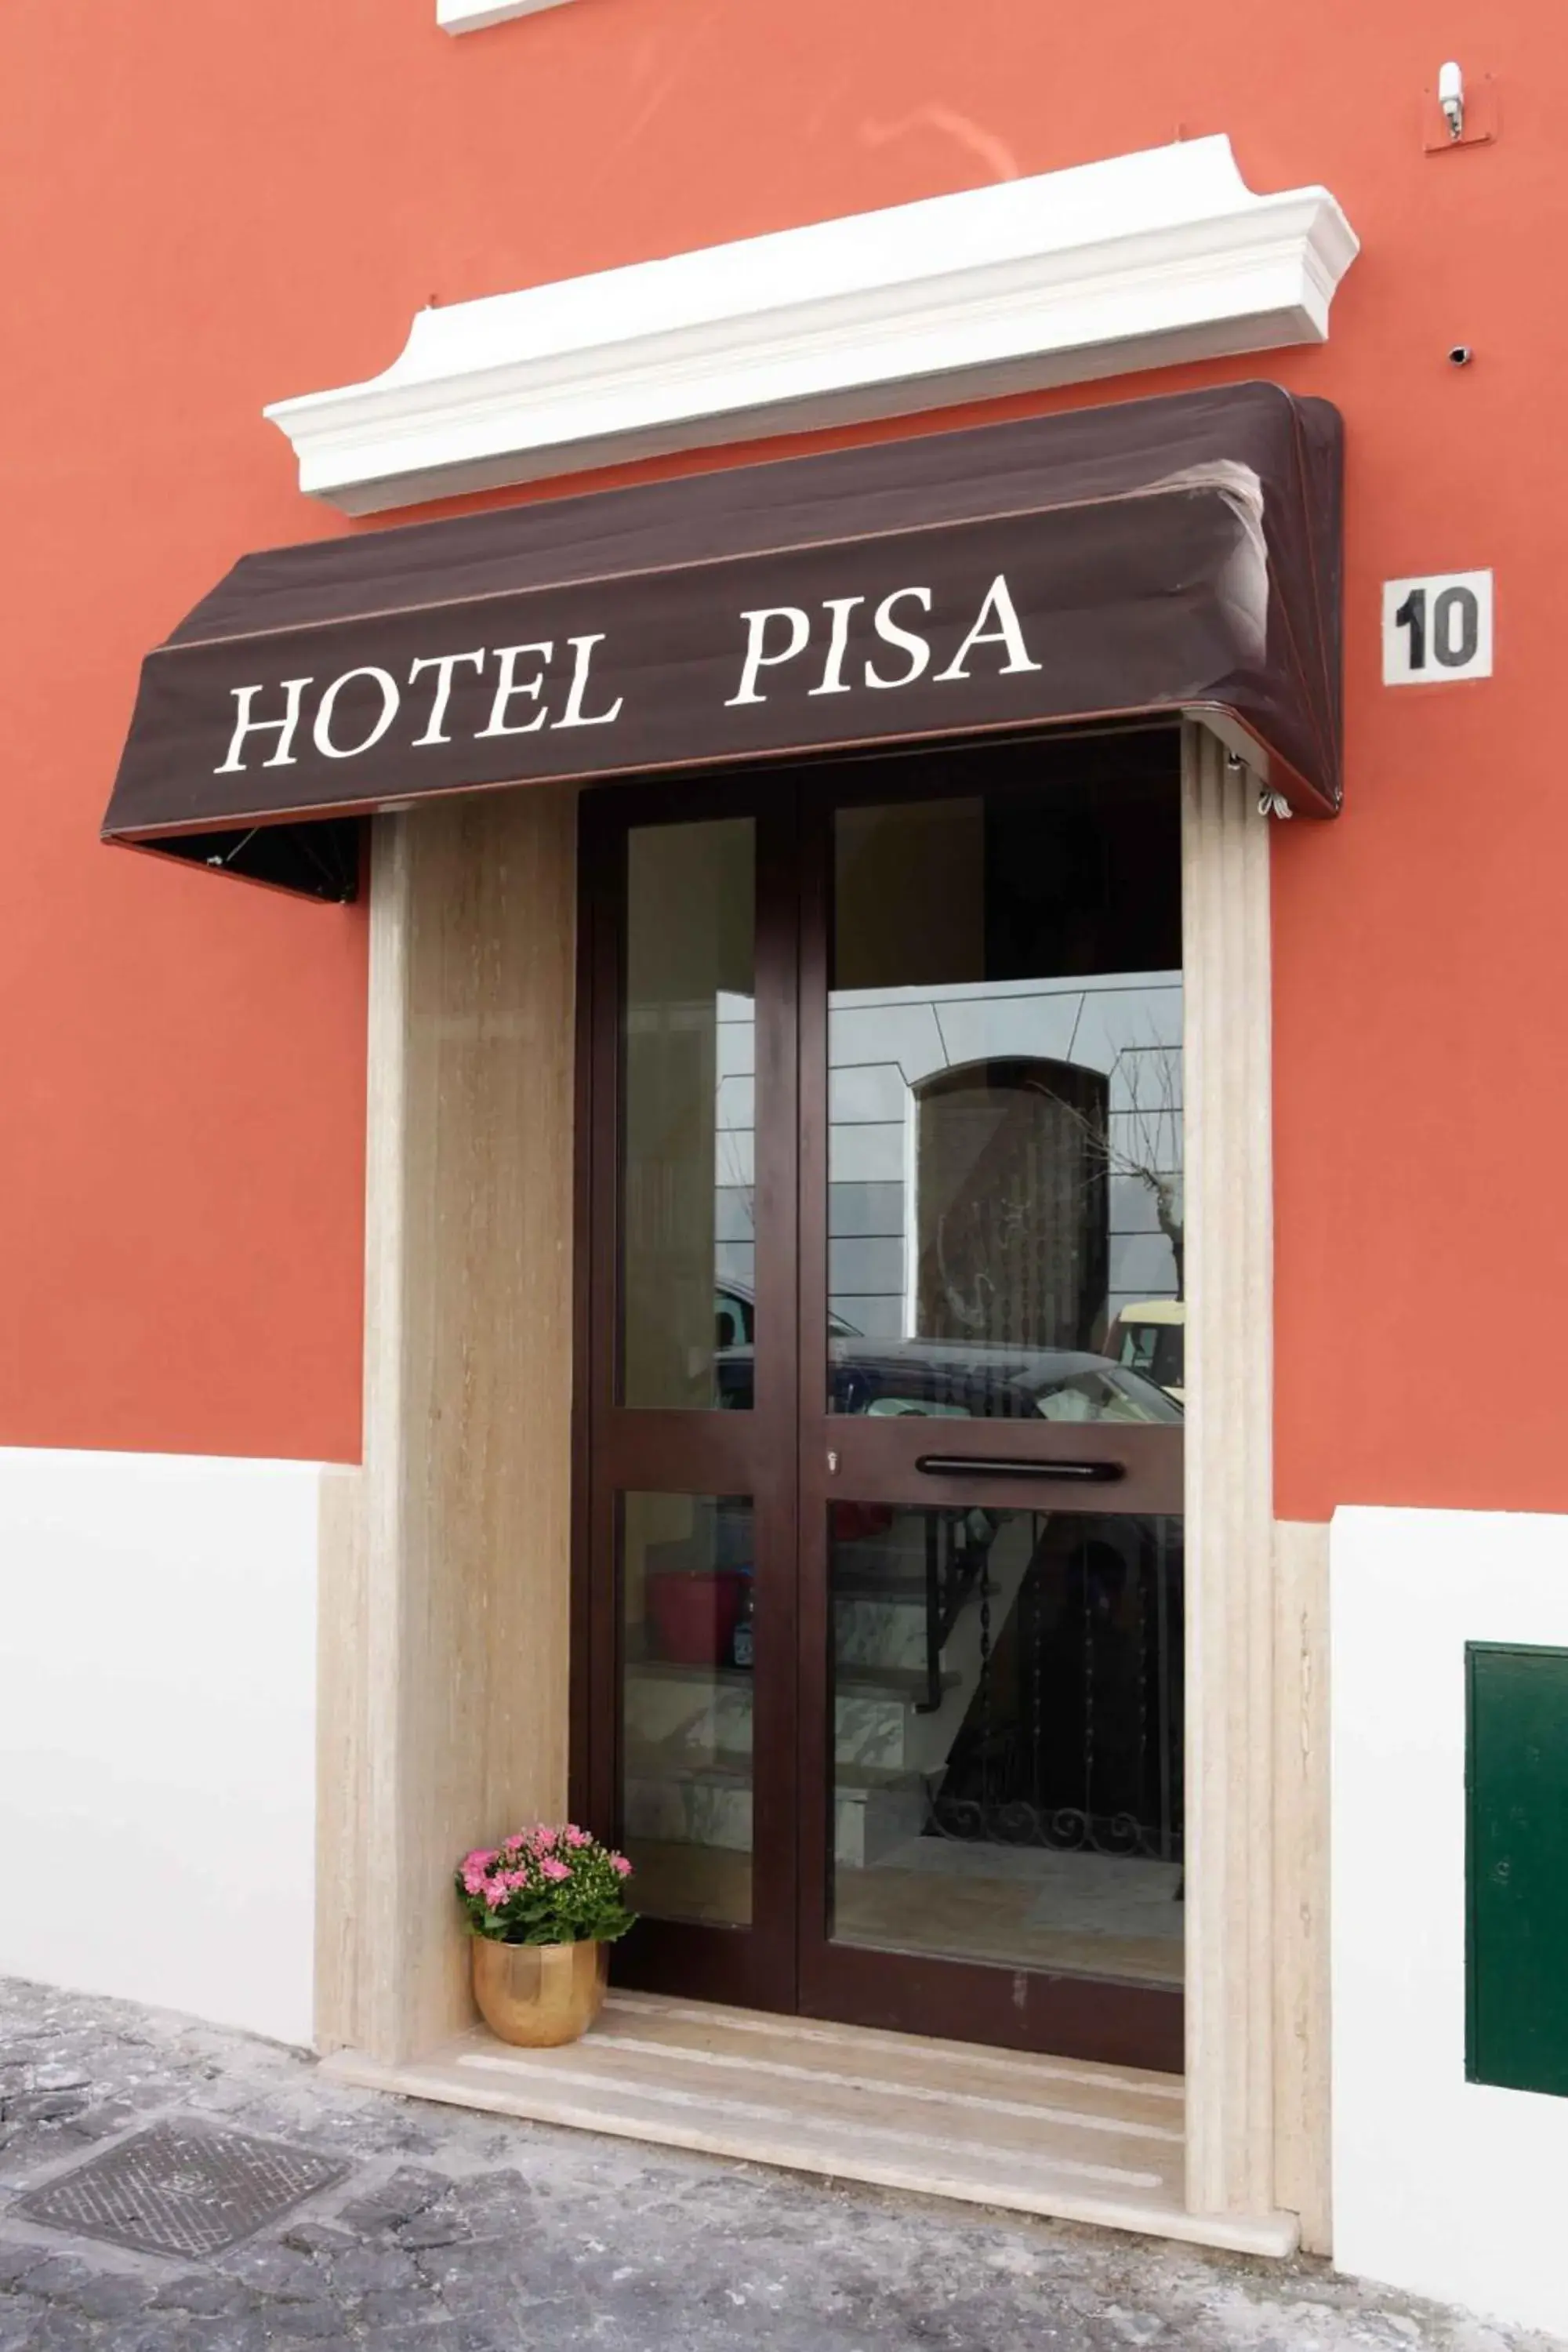 Facade/entrance in Hotel Pisa